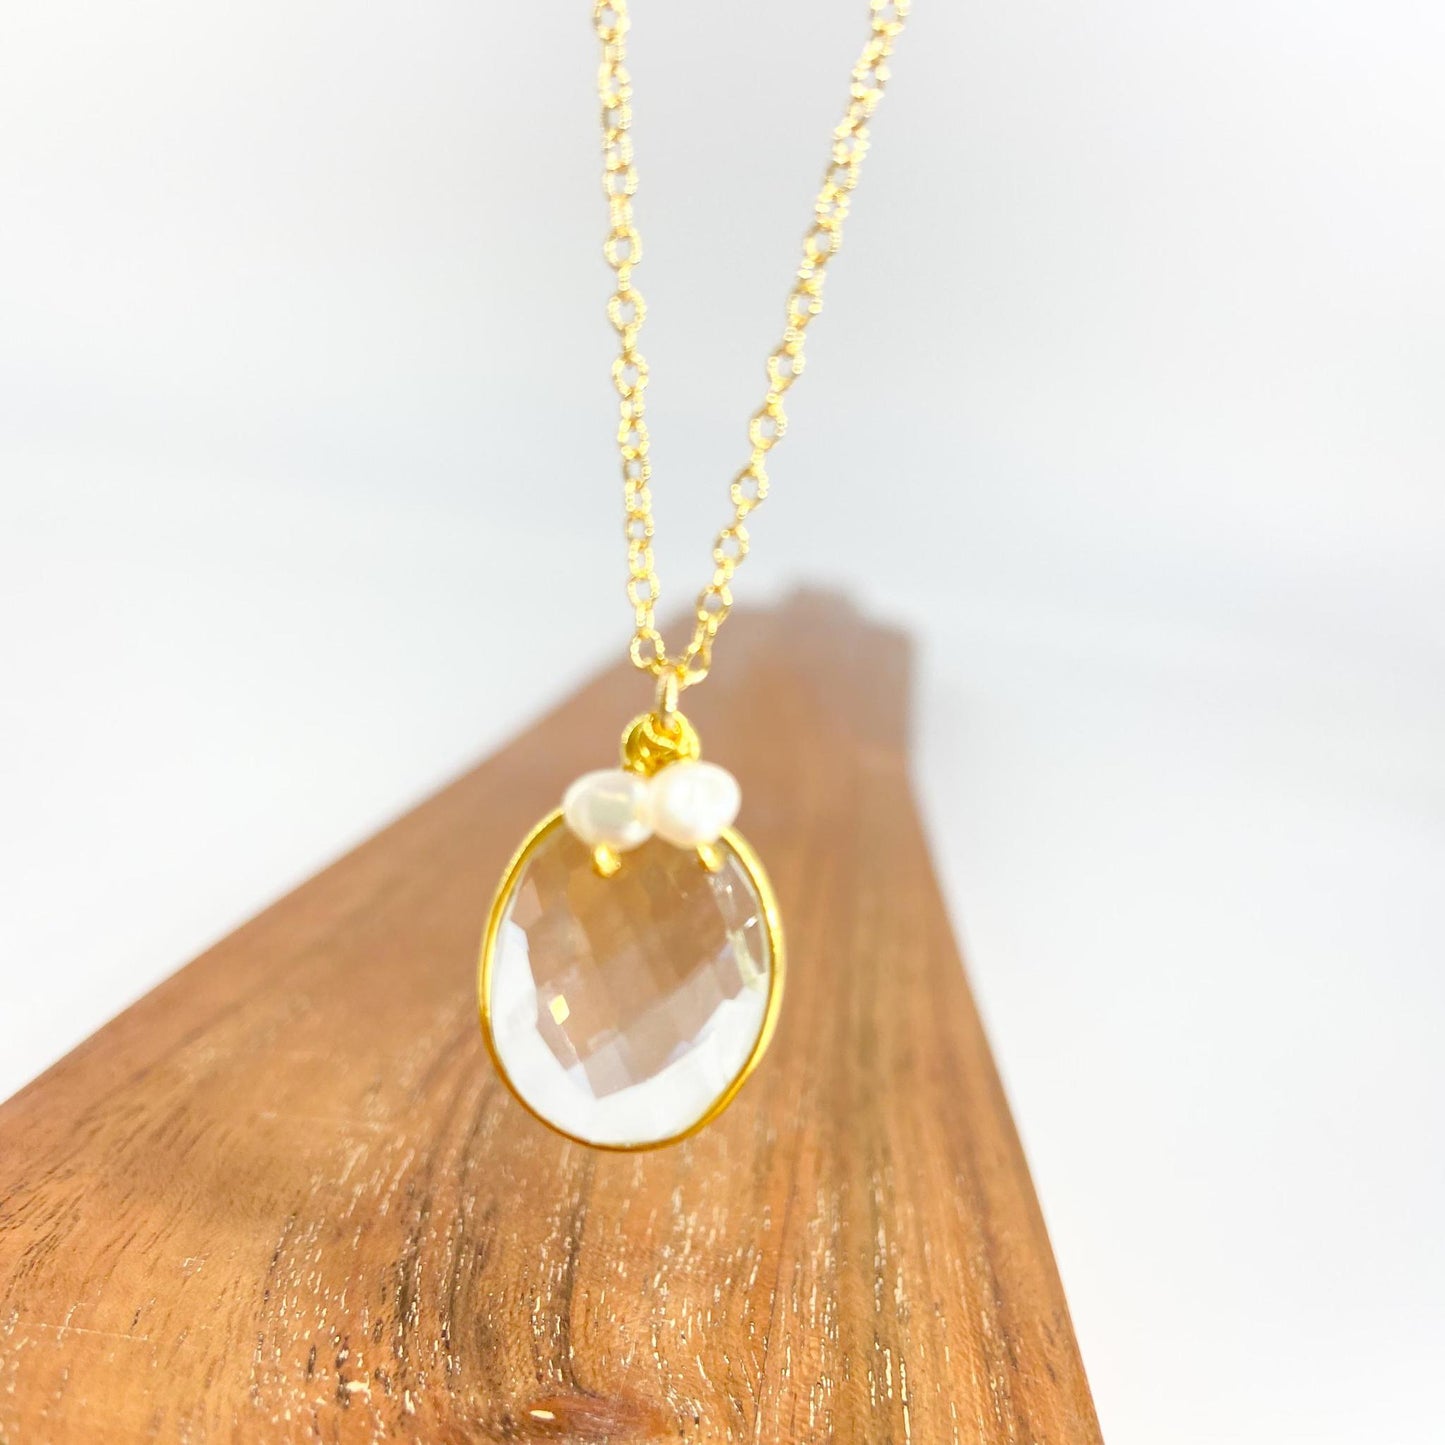 Necklace - Bezel Set Crystal & Pearls - 18K Gold Vermeil